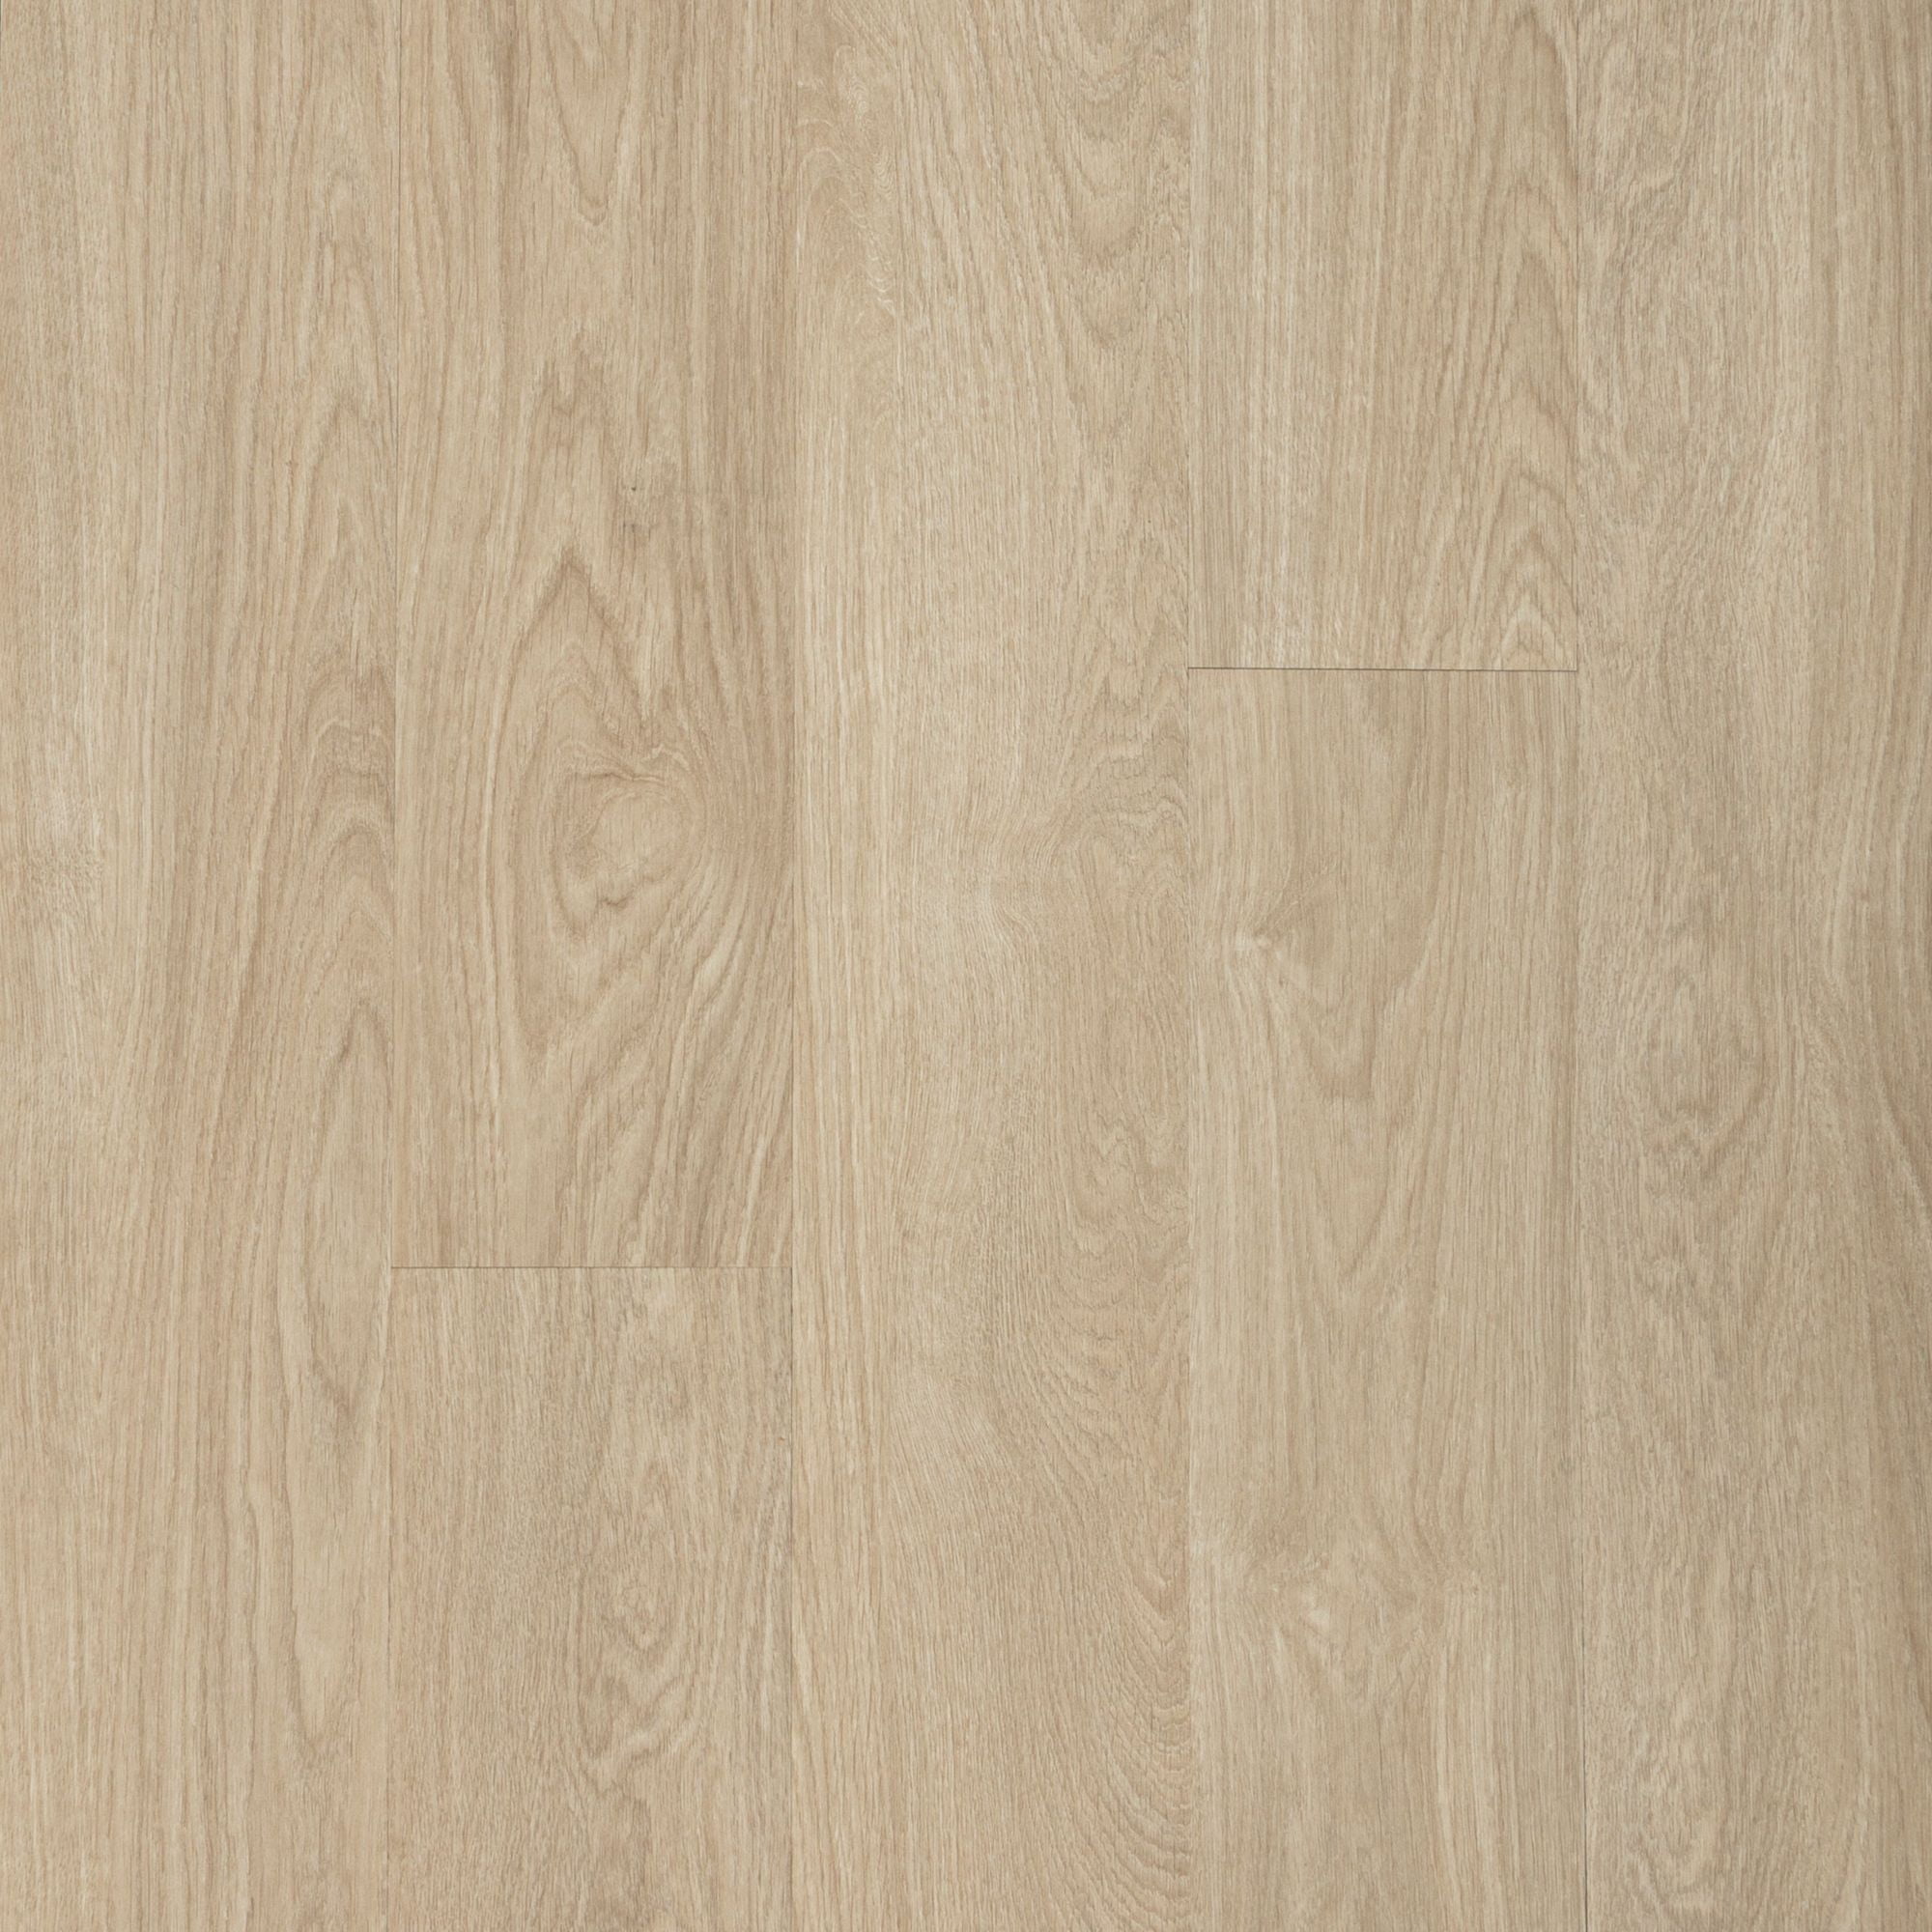 Mohawk 7.75x52 Waterproof Vinyl Plank Flooring in Pure Wheat Oak 4.2 mm  (26.91-sqft)/Carton)